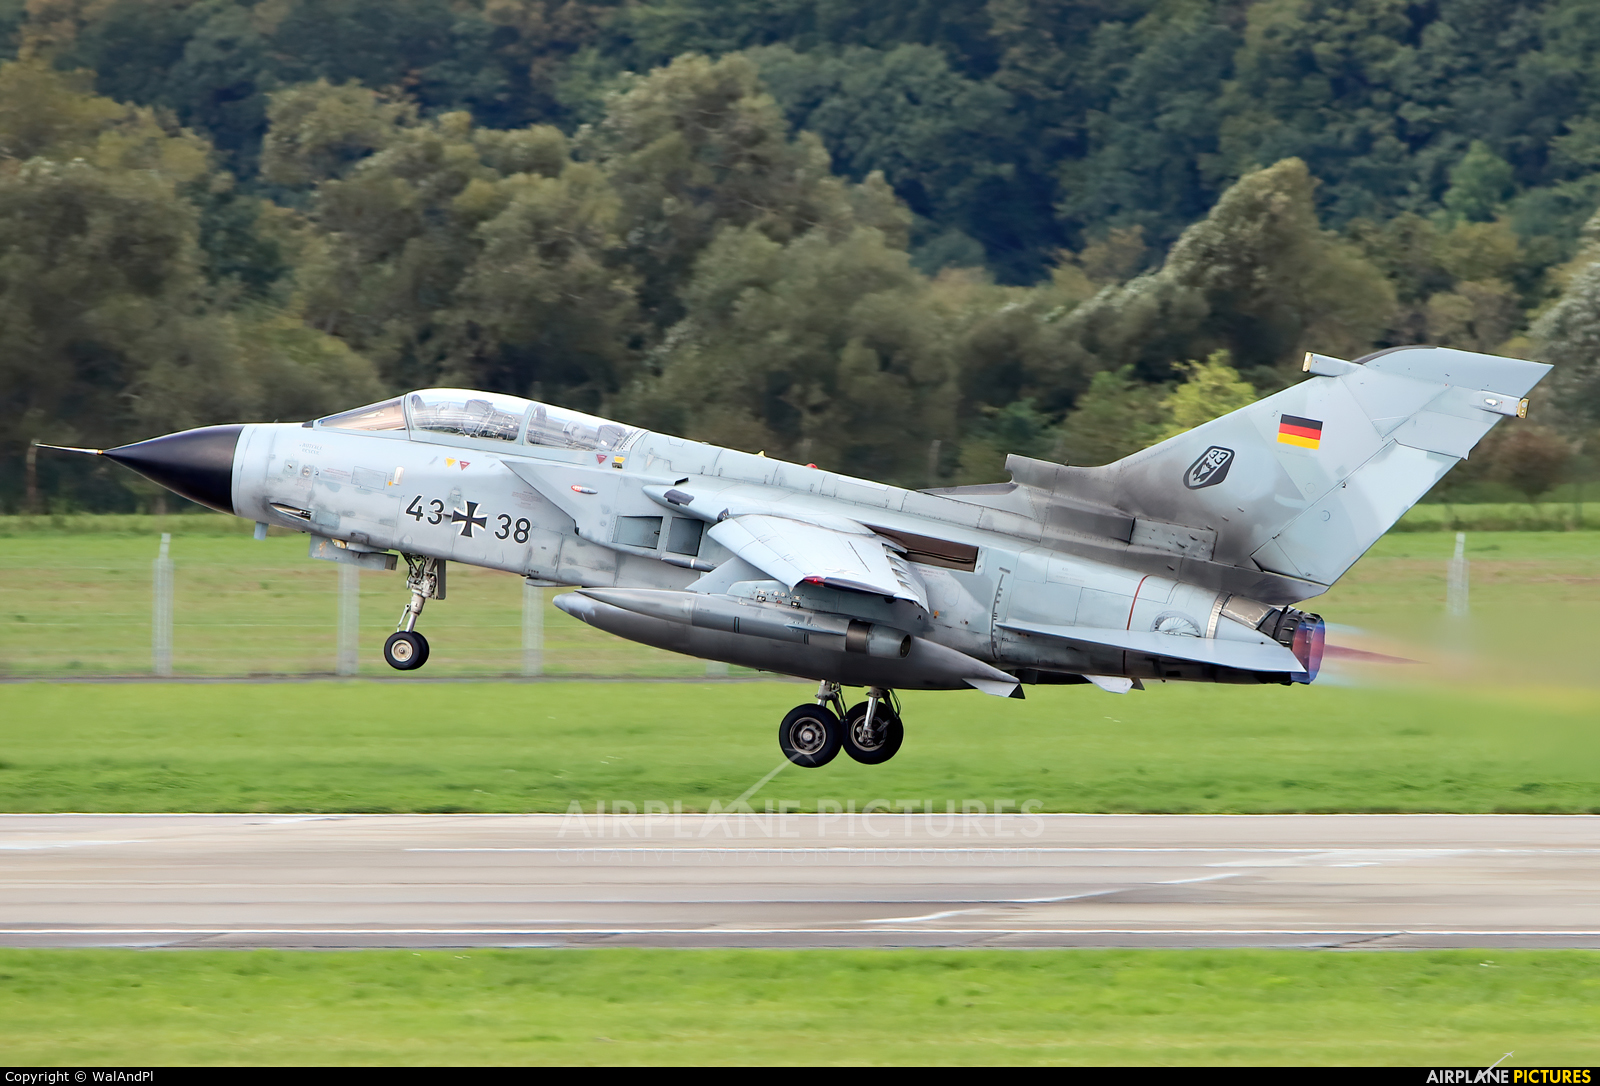 Germany - Air Force 43+38 aircraft at Ostrava Mošnov